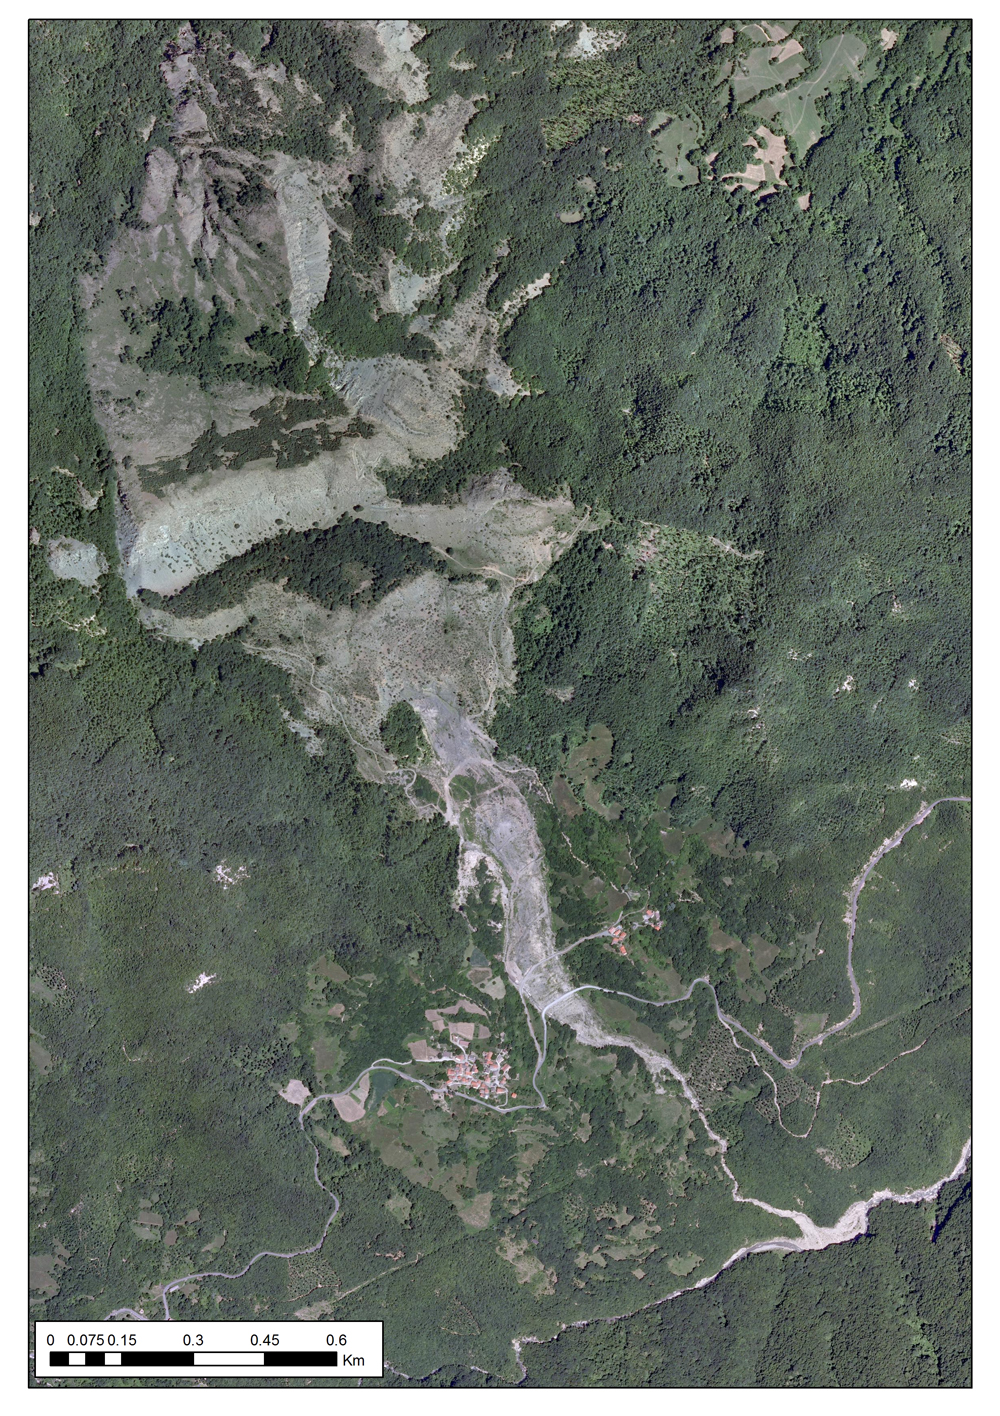 La frana di Acquanera - Tiglio vista da una foto aerea del 2011